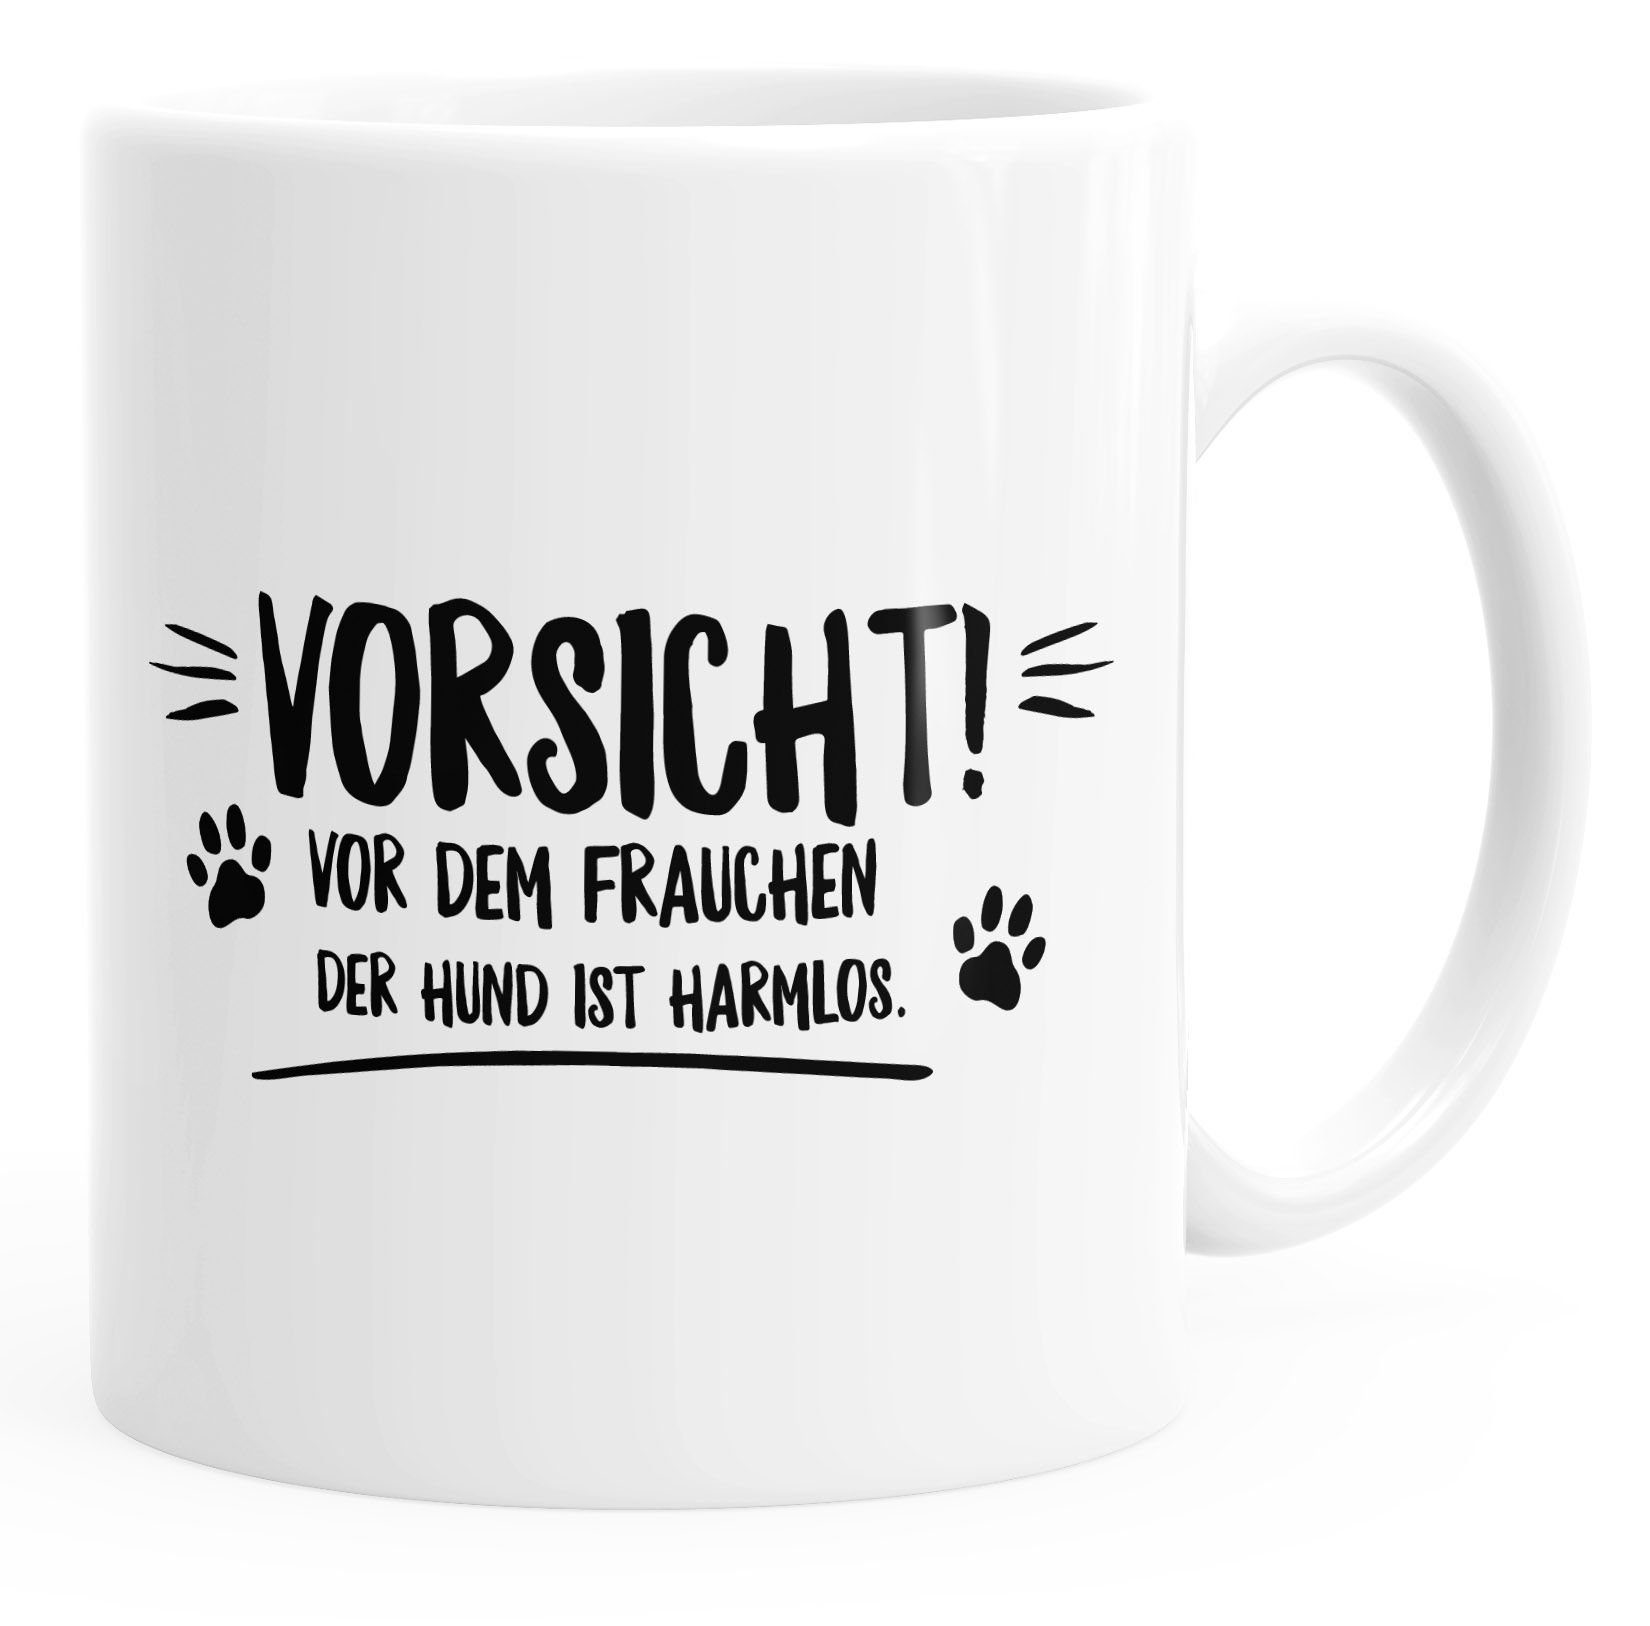 MoonWorks Tasse Vorsicht vor dem Frauchen der Hund ist harmlos! Kaffee-Tasse mit Spruch glänzend MoonWorks®, Keramik